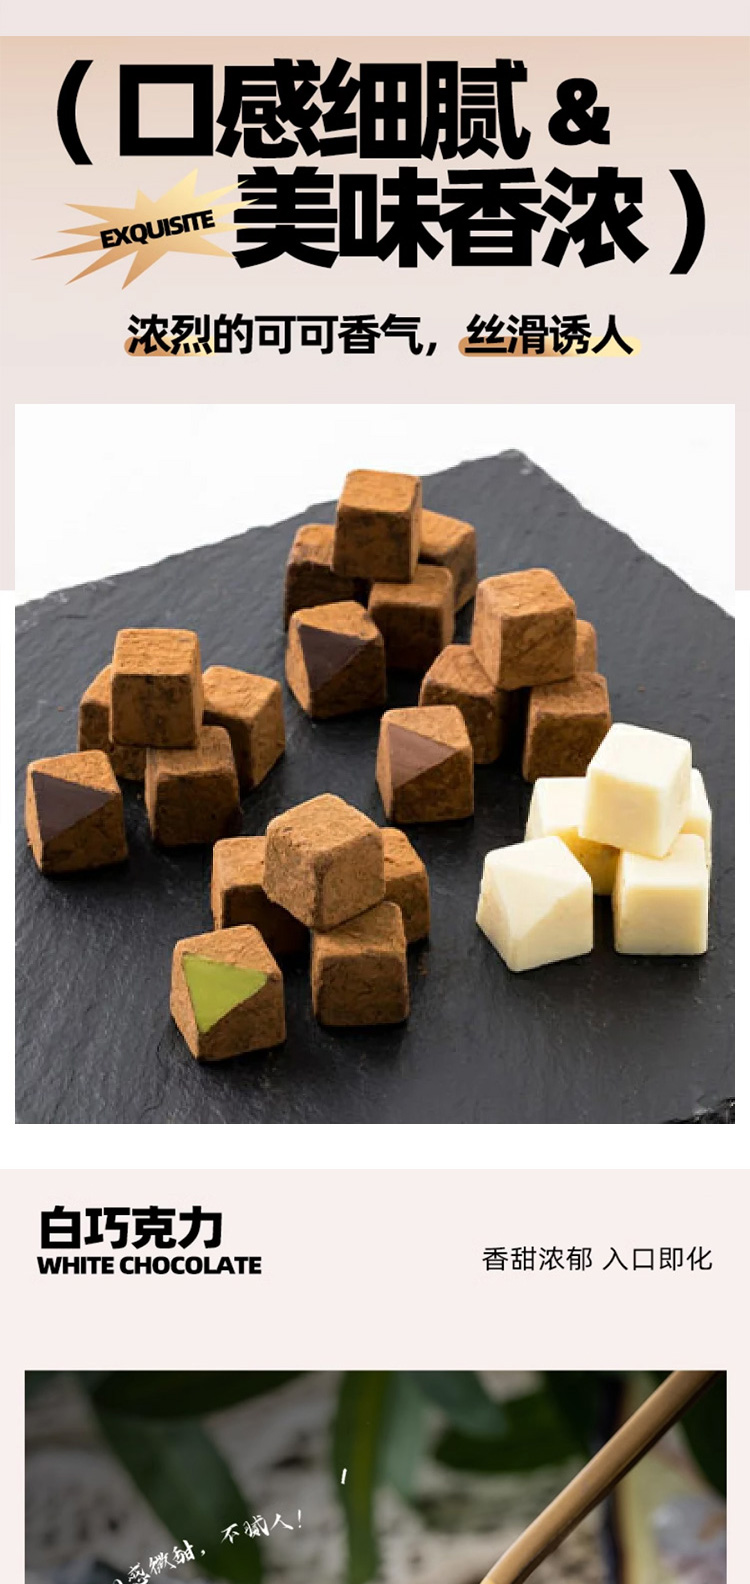 【日本直邮】日本TAKAOKA高冈 小红书推荐 高岗巧克力 生巧克力 抹茶味生巧克力 140g